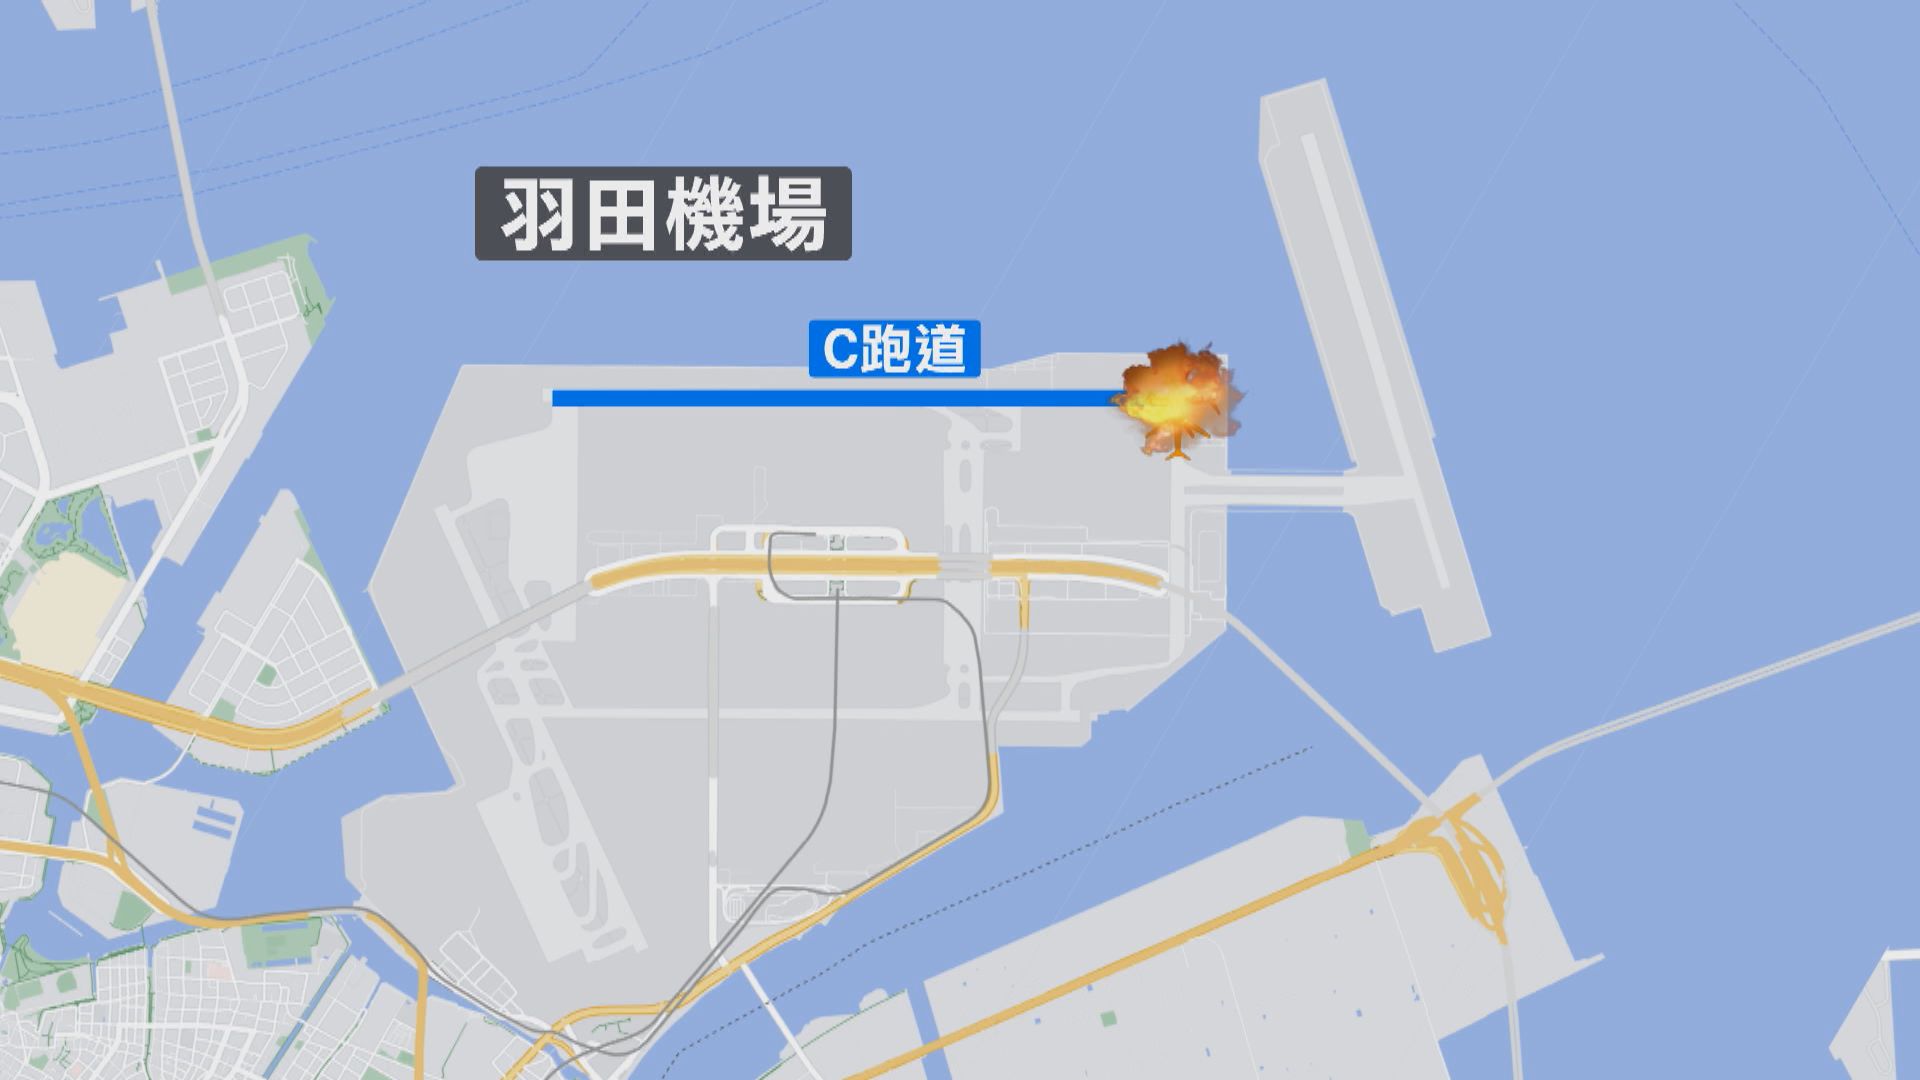 日本國土交通省表示會徹查撞機事故